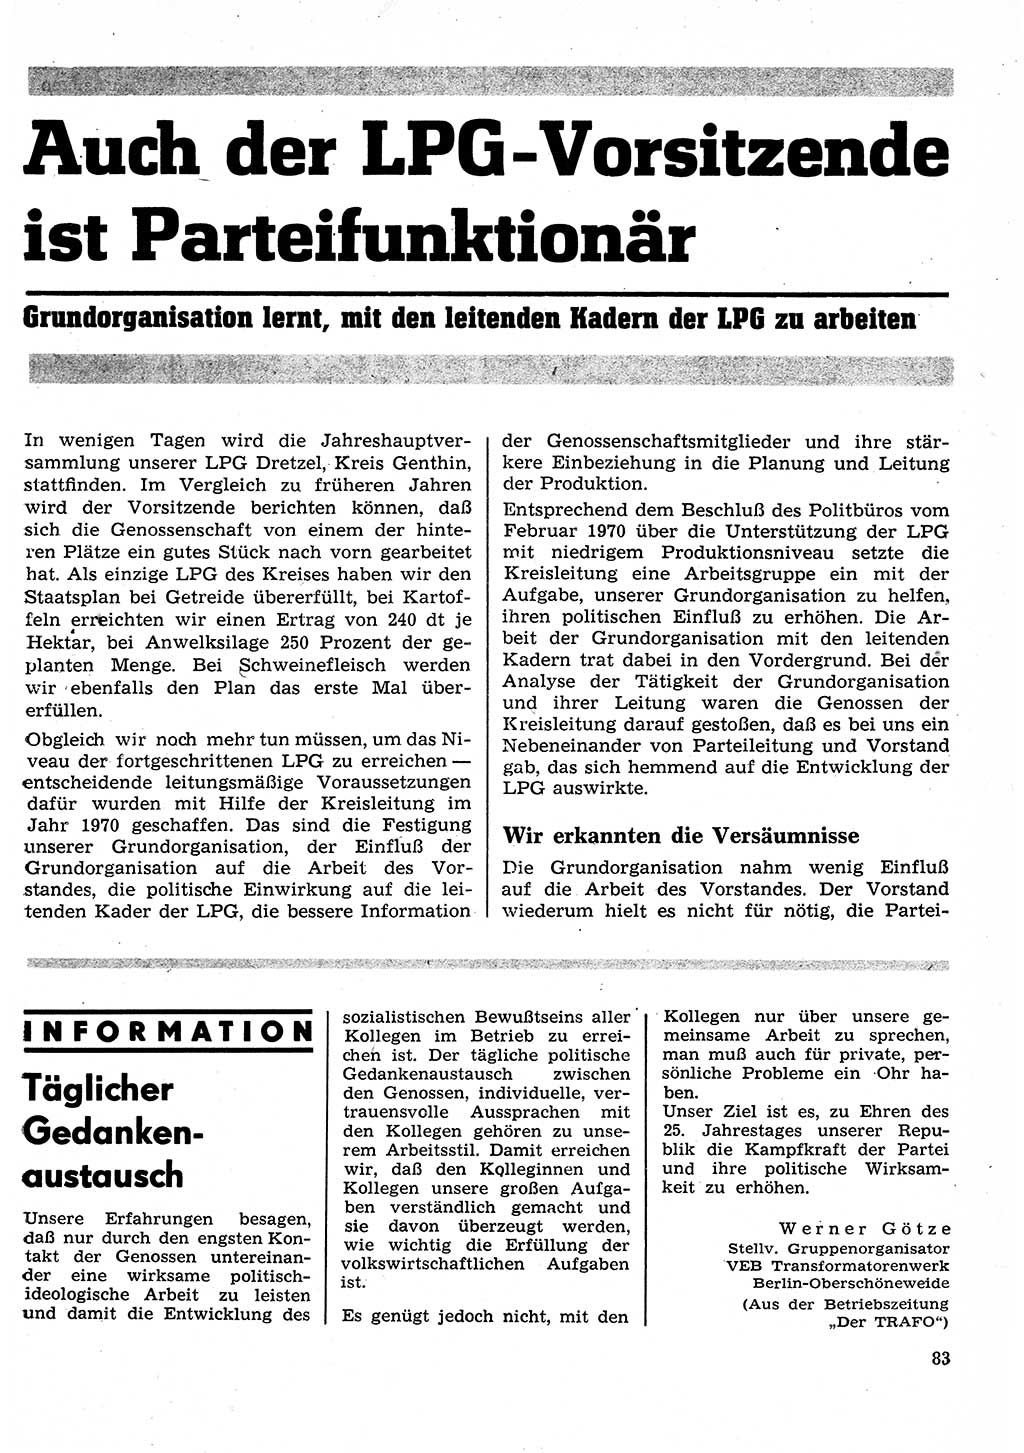 Neuer Weg (NW), Organ des Zentralkomitees (ZK) der SED (Sozialistische Einheitspartei Deutschlands) für Fragen des Parteilebens, 26. Jahrgang [Deutsche Demokratische Republik (DDR)] 1971, Seite 83 (NW ZK SED DDR 1971, S. 83)